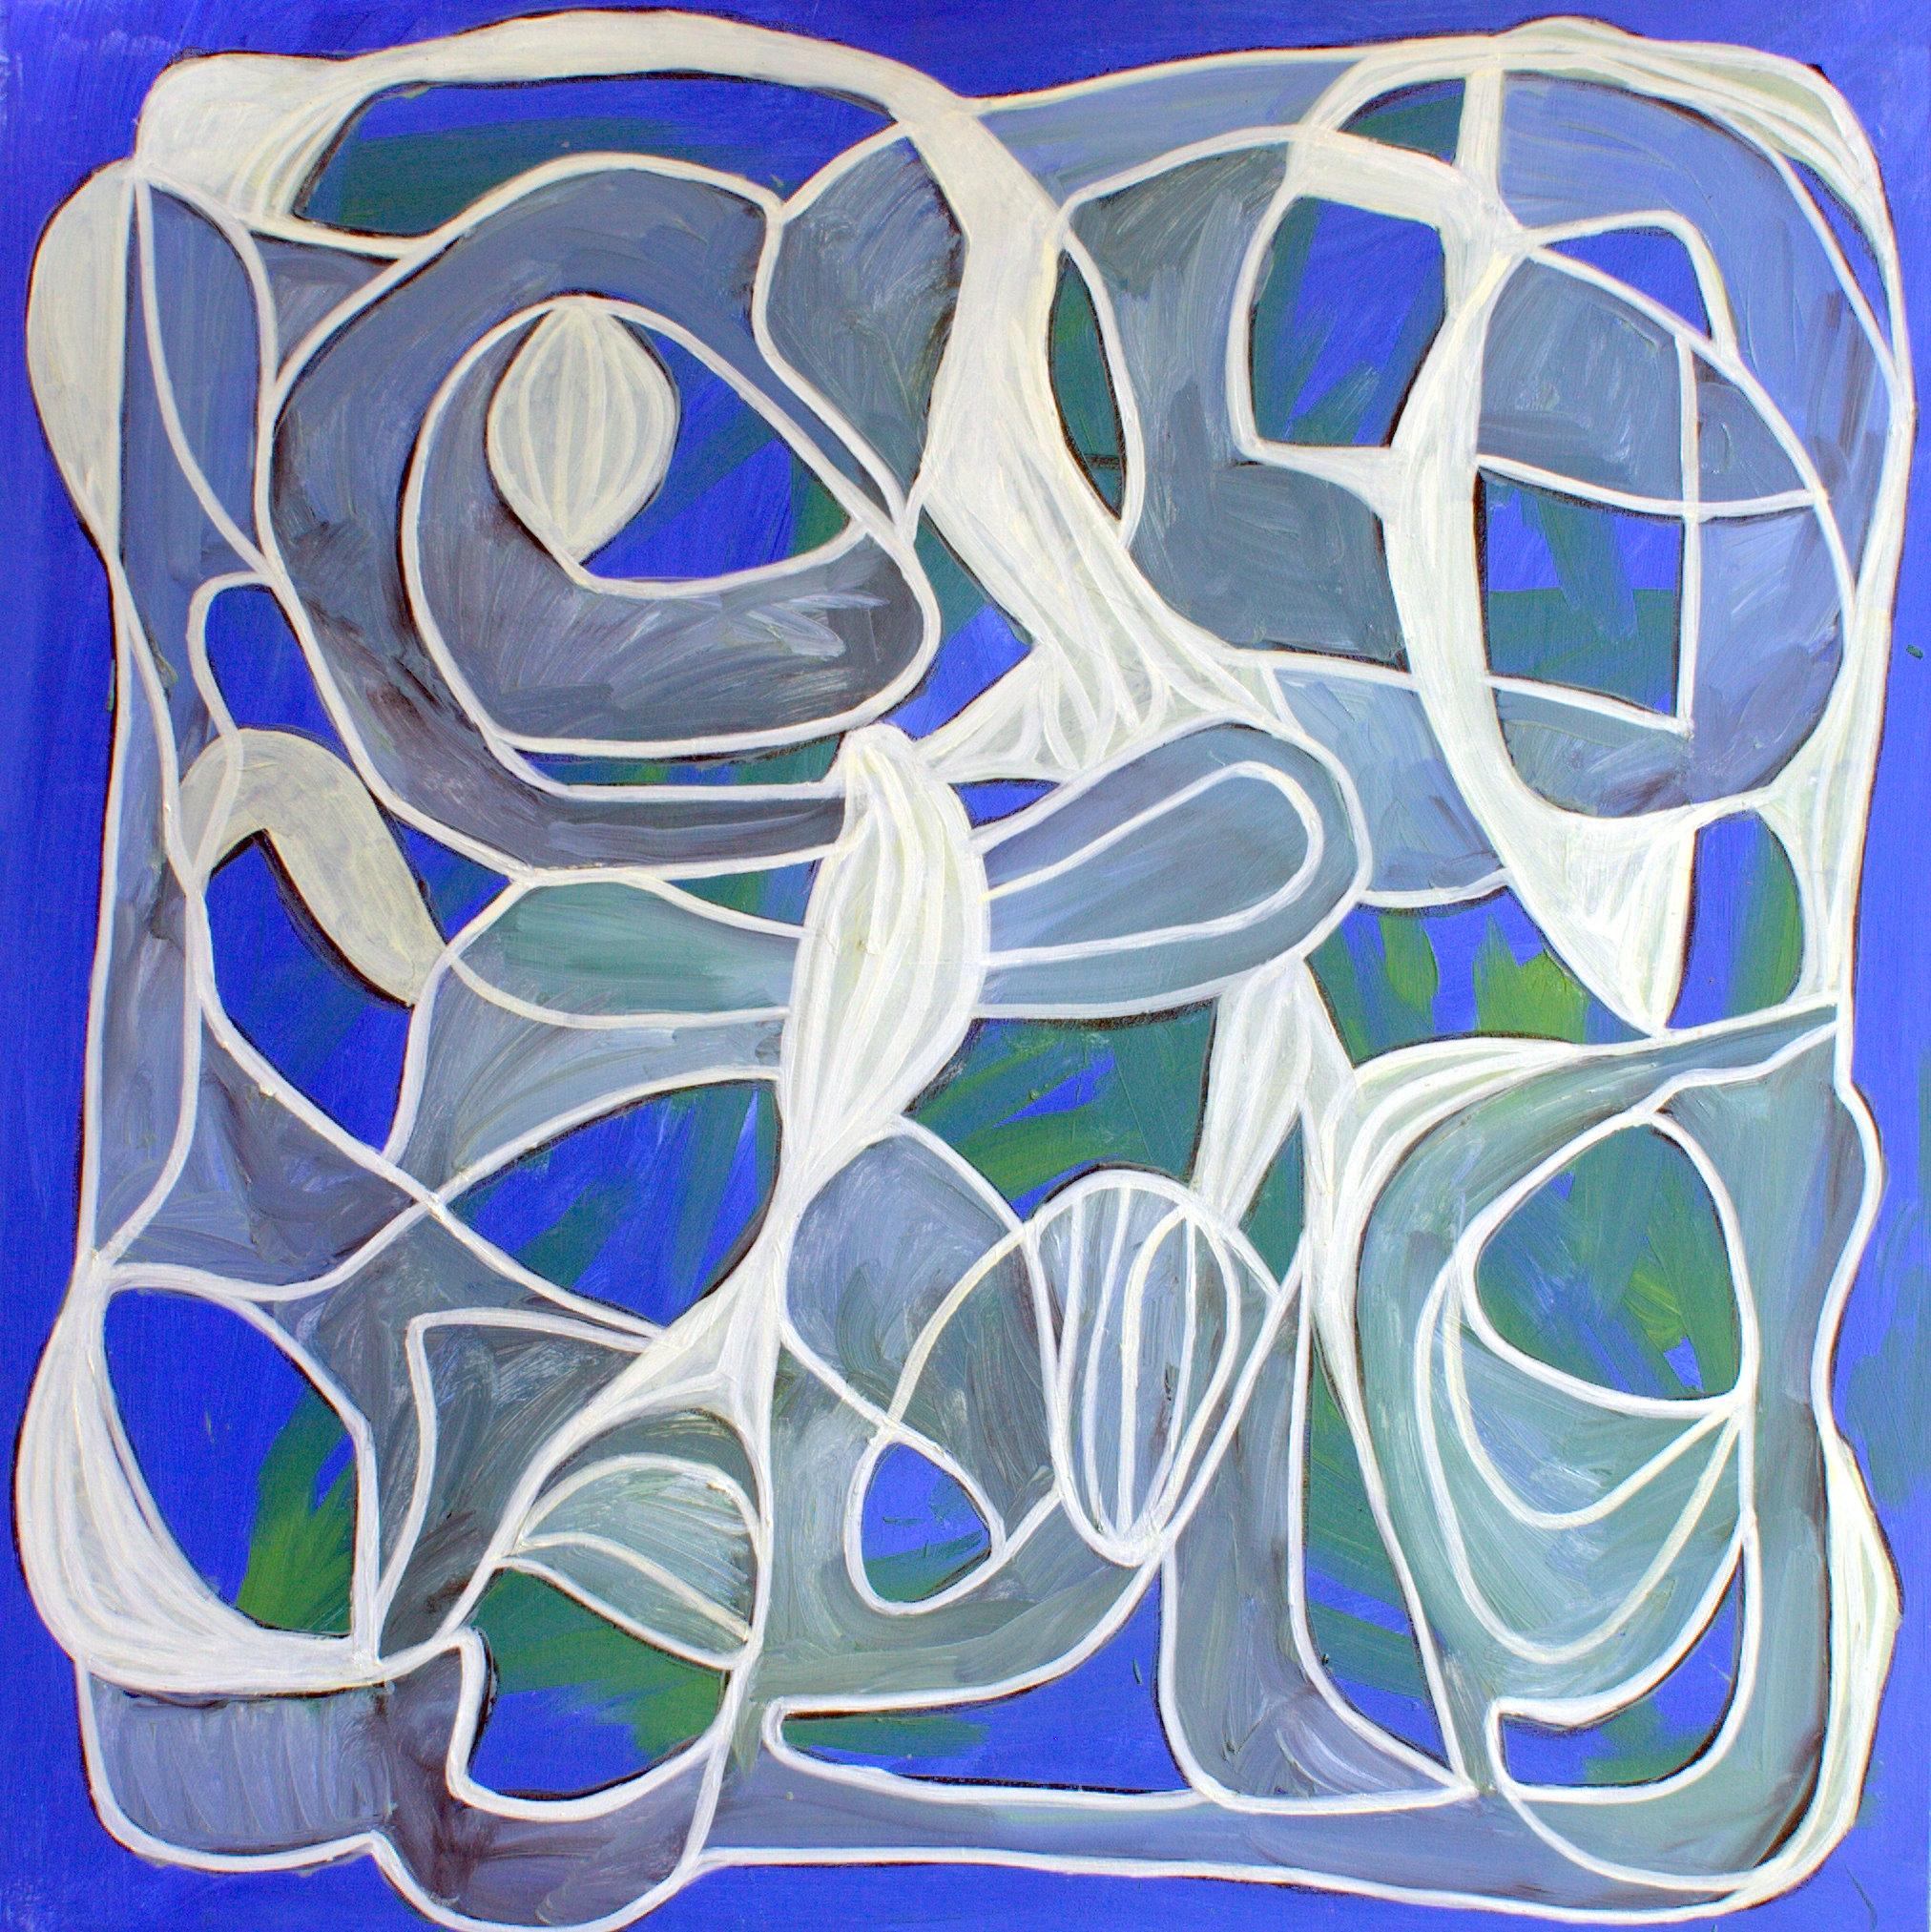 Abstract Painting Steven Miller - Montre - Coquillages de mer, peinture, huile sur toile